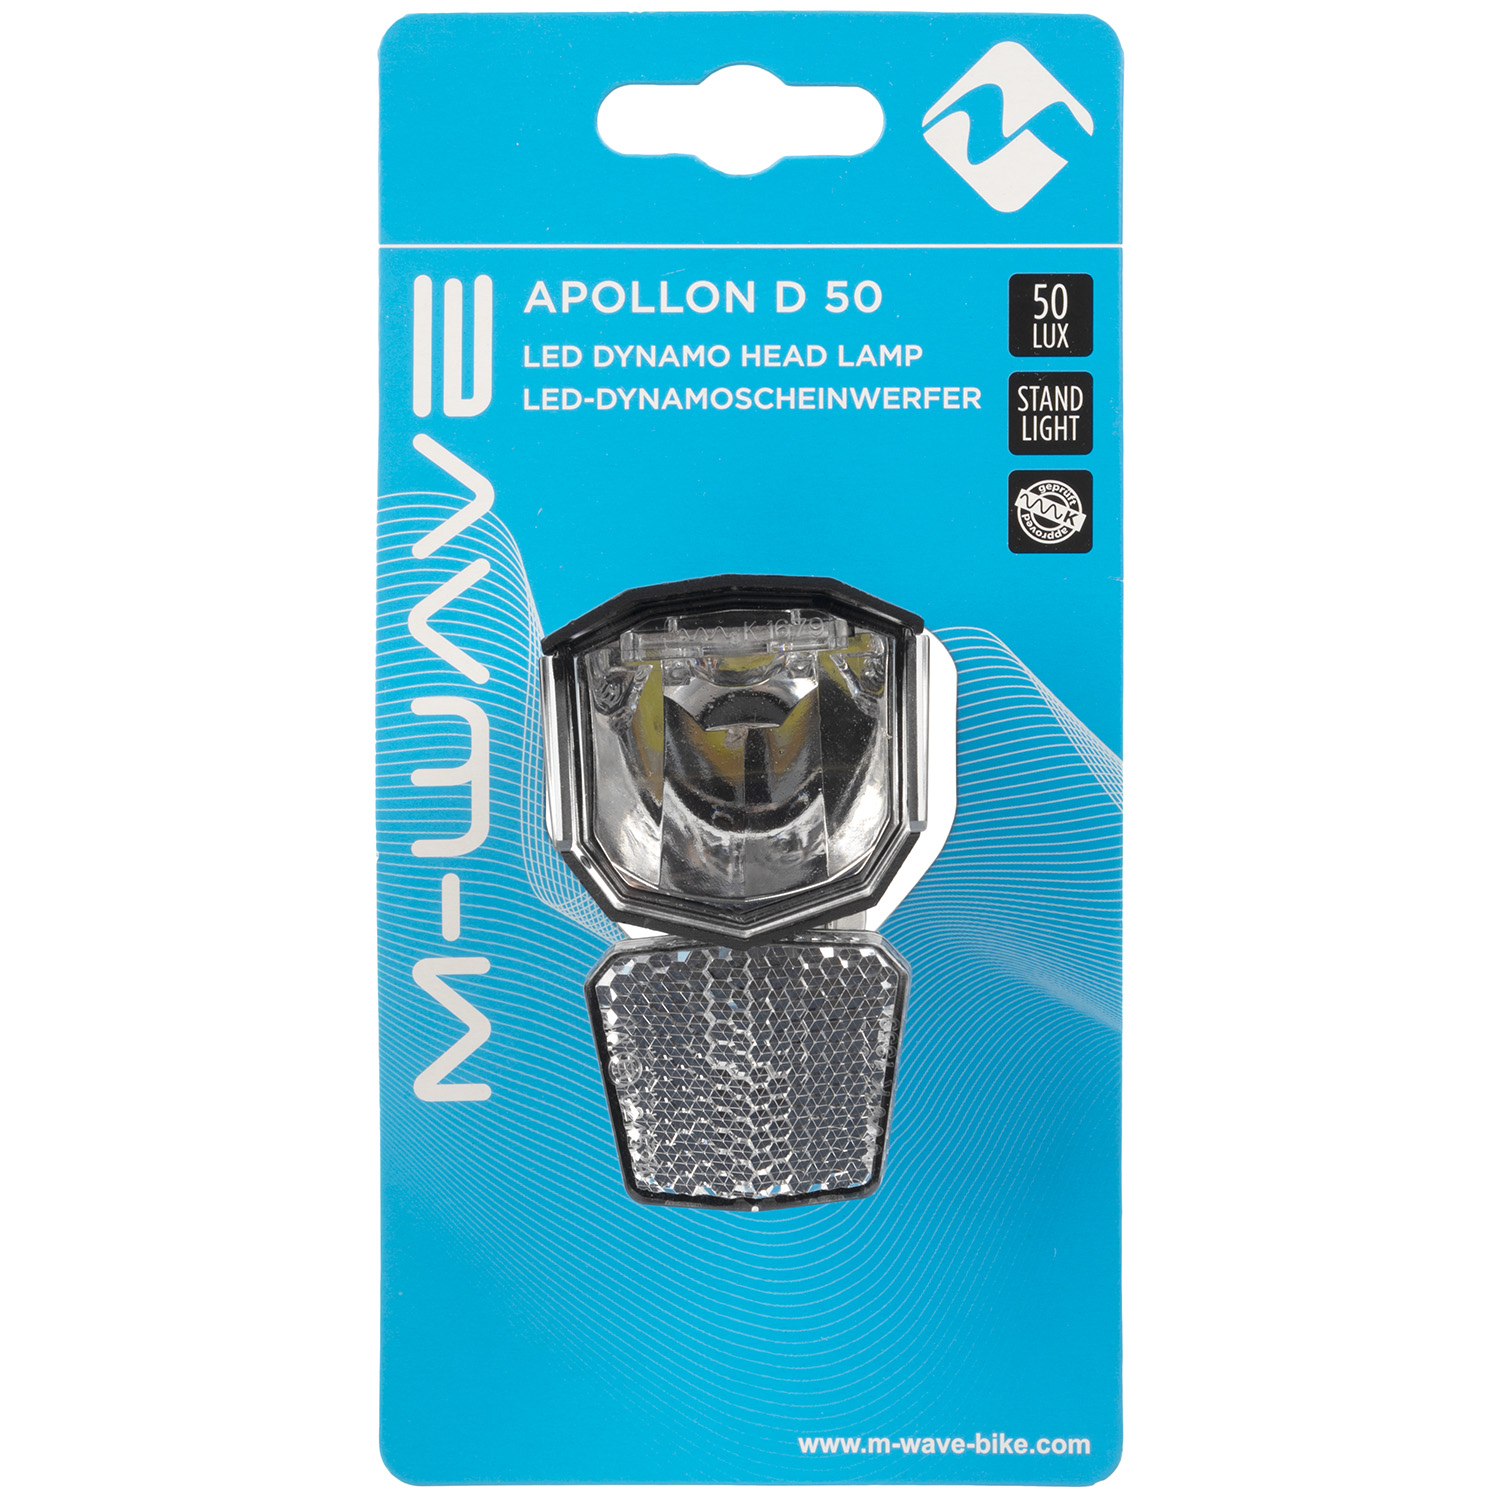 LED-Scheinwerfer APOLLON 50 ND für Dynamobetrieb in Schwarz